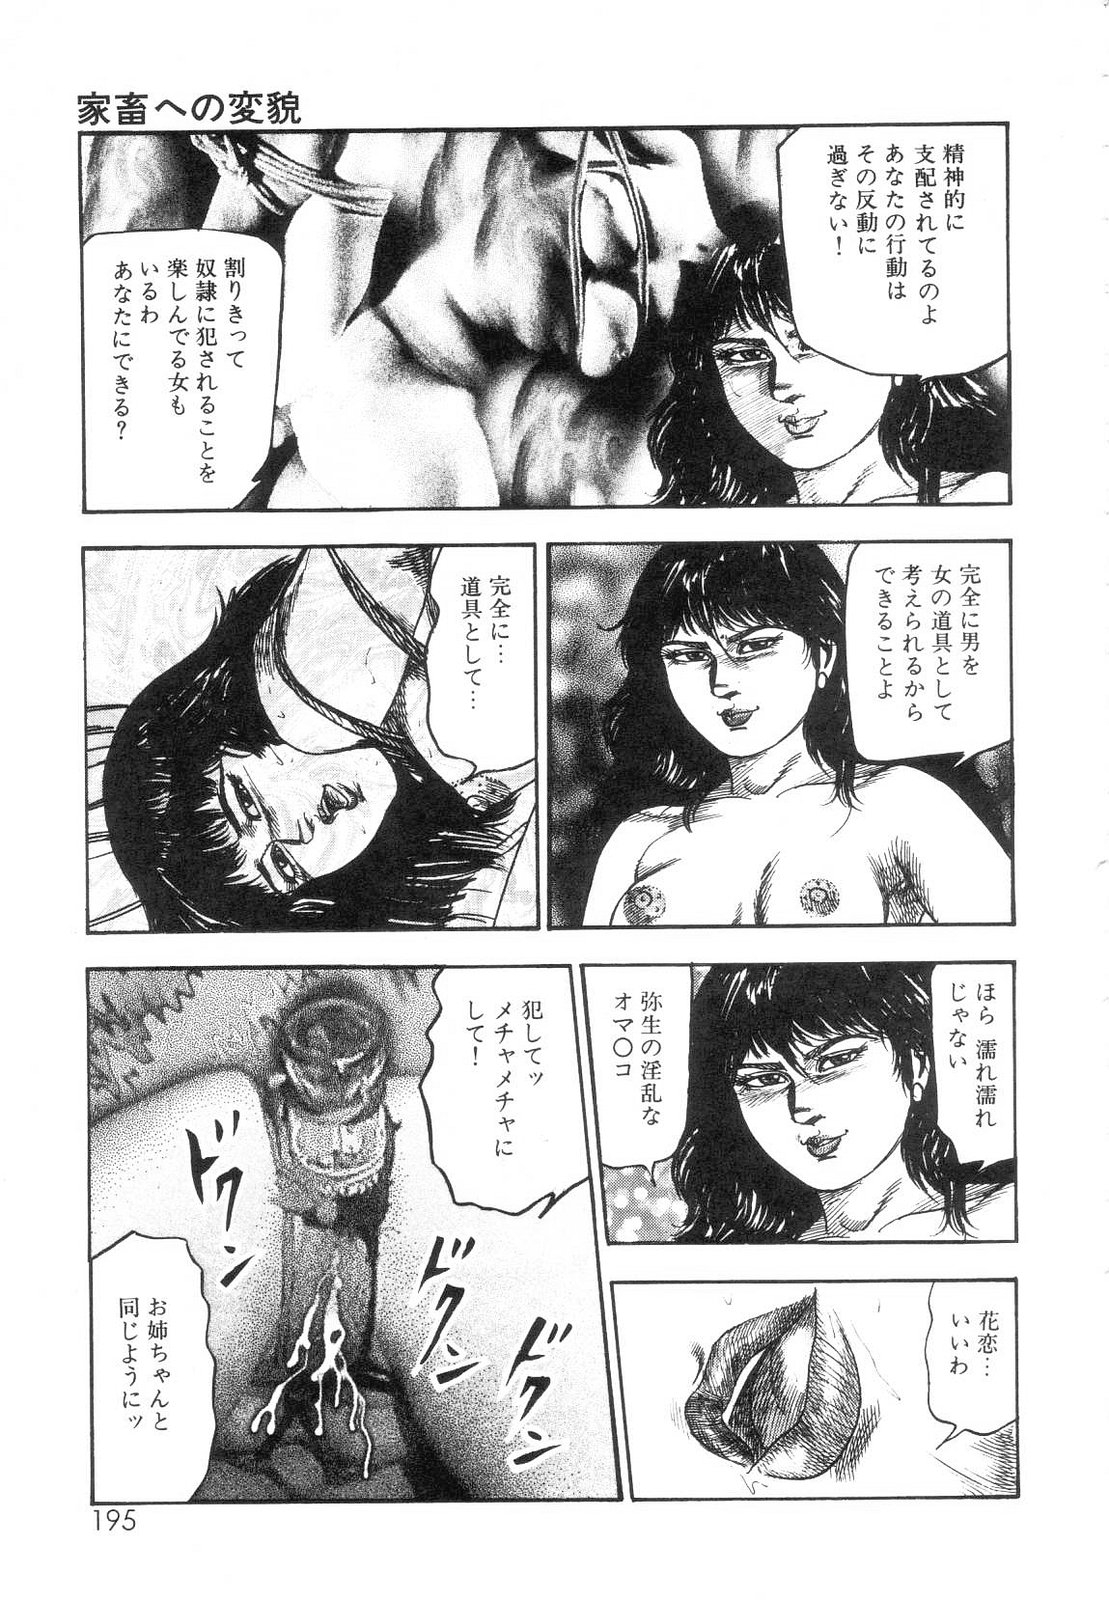 [Sanjou Tomomi] Shiro no Mokushiroku Vol. 7 - Shiiku Ningyou Erika no Shou 196